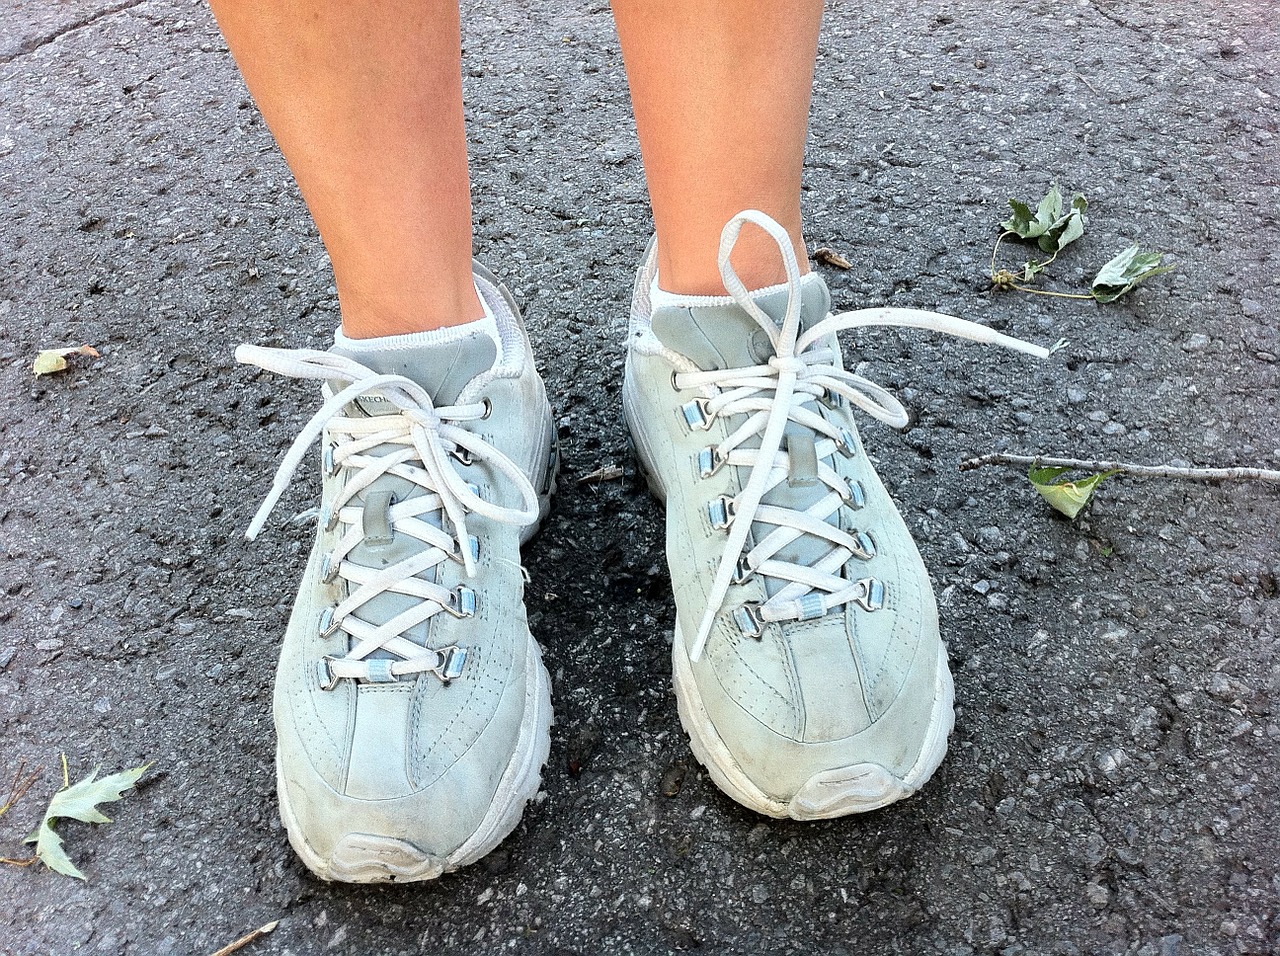 Bieganie i sport. Blog o bieganiu, muzyka podczas ćwiczeń